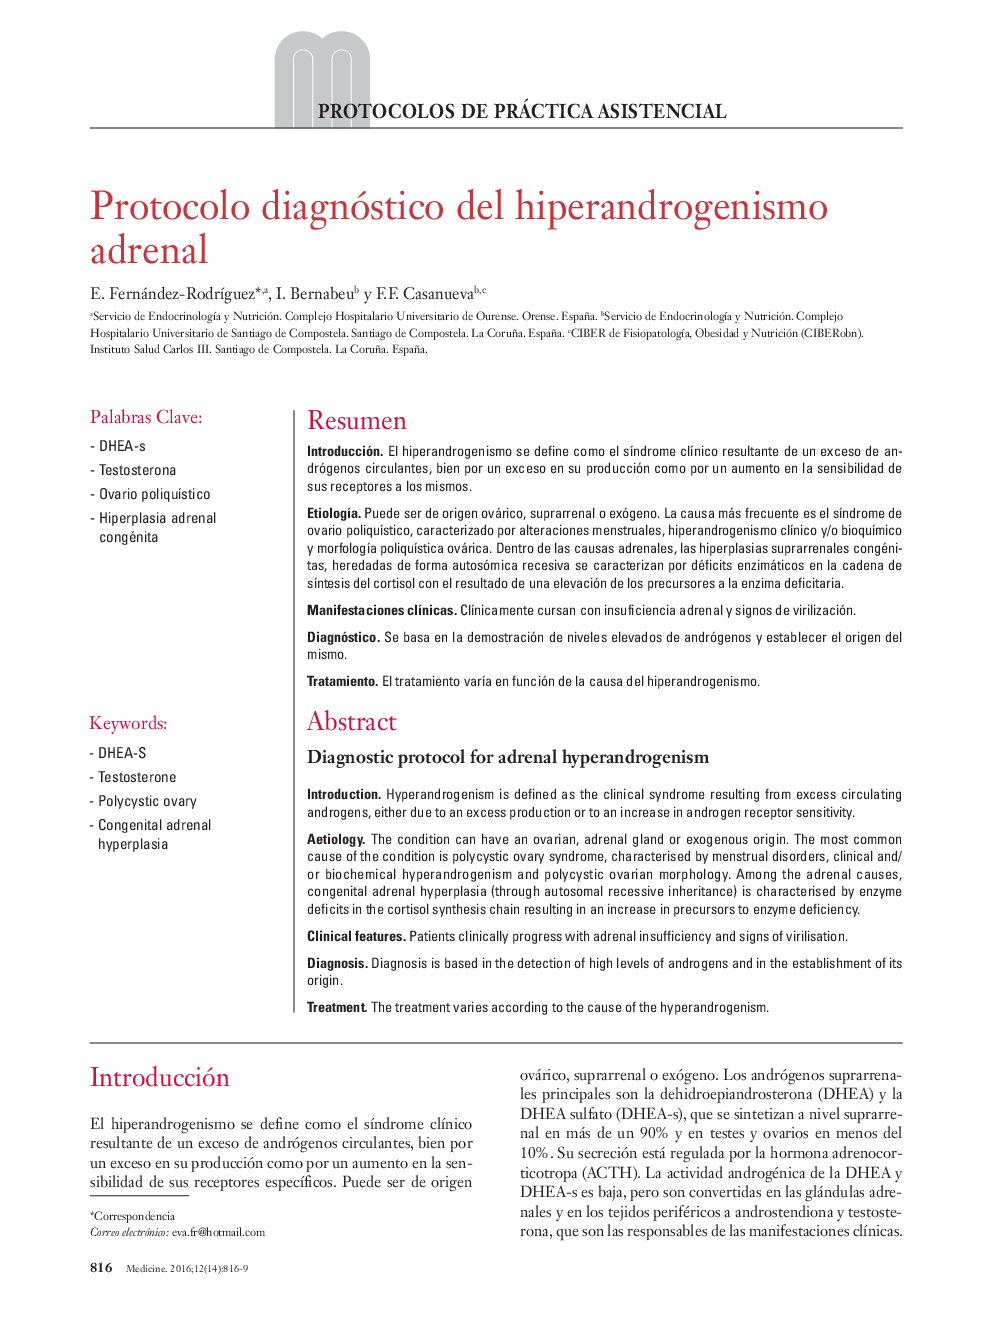 Protocolo diagnóstico del hiperandrogenismo adrenal